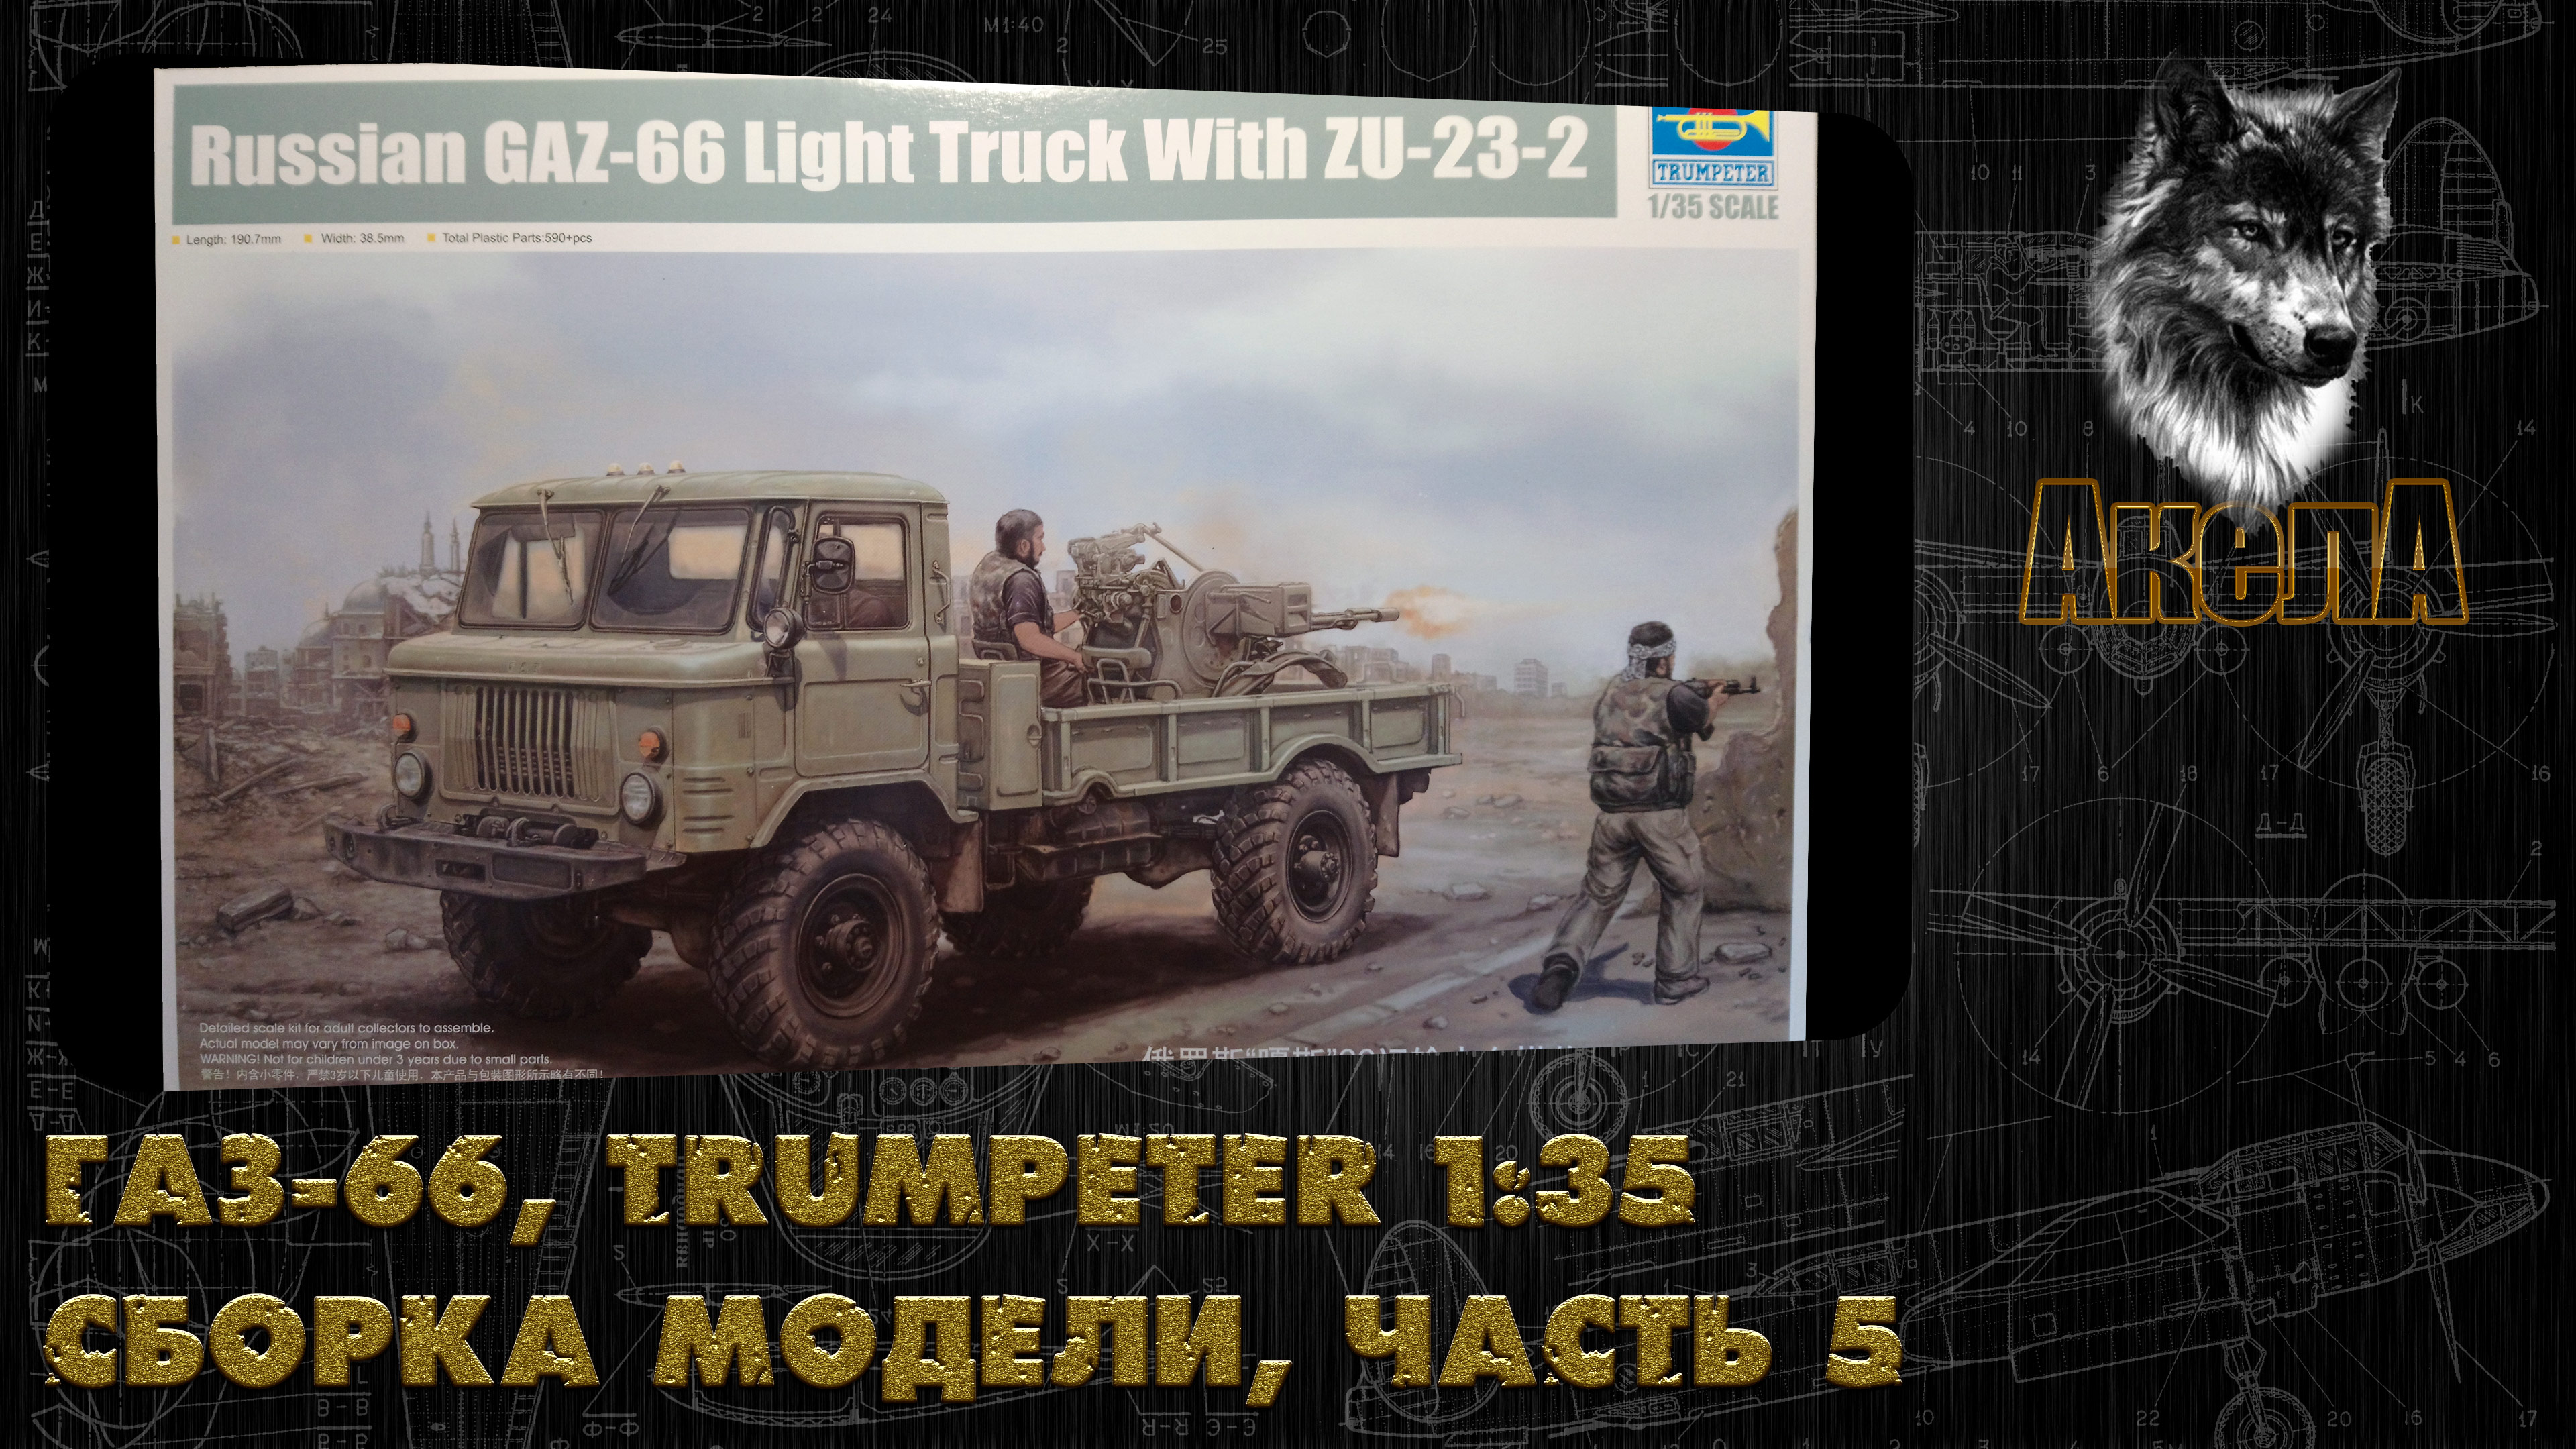 ГАЗ-66 с ЗУ-23-2, Trumpeter 1/35, сборка модели, часть 5